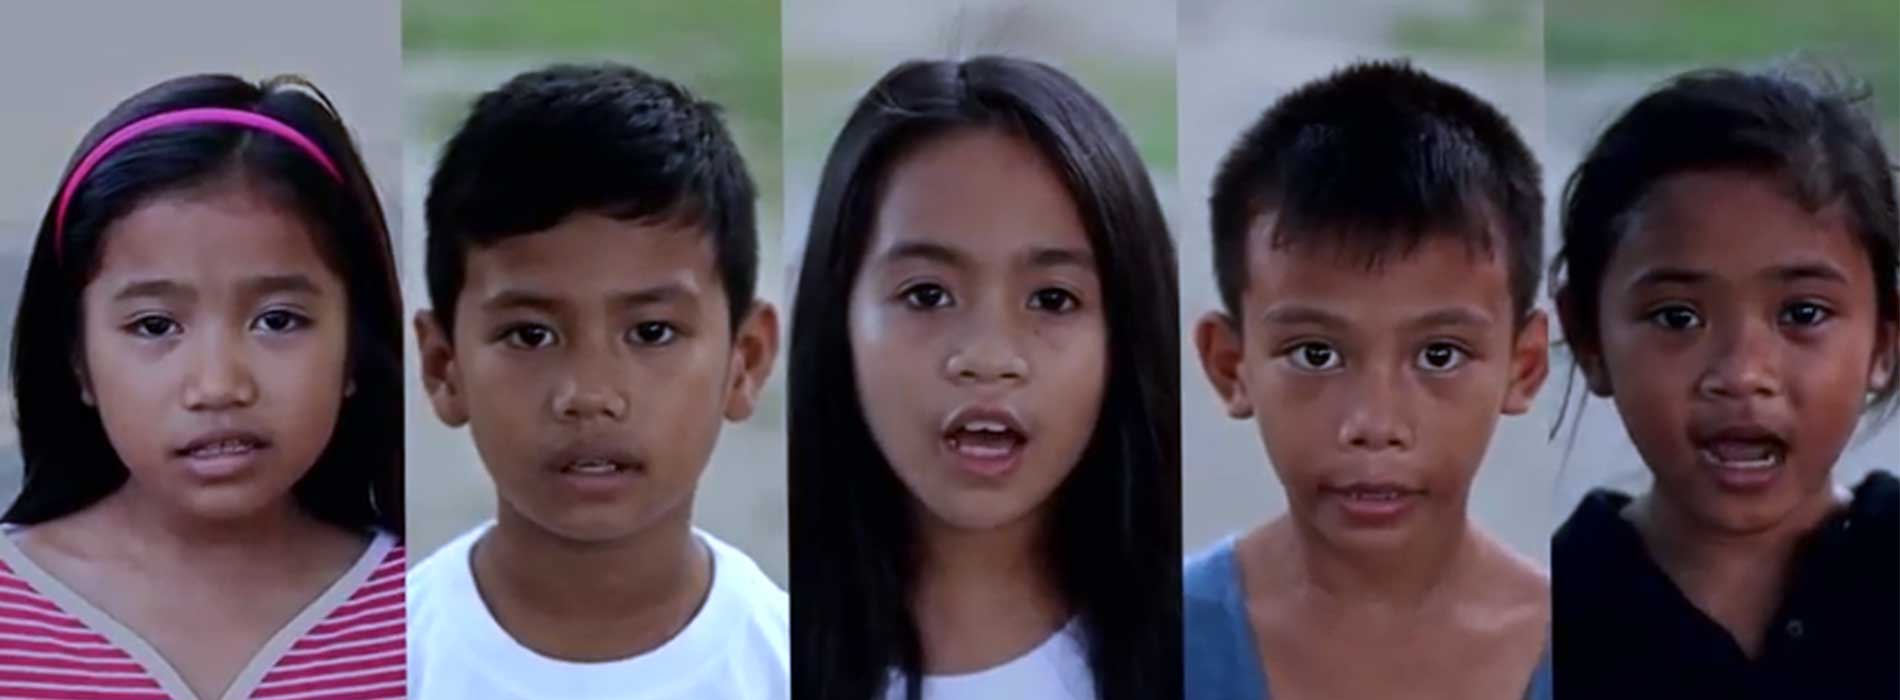 Concours de vidéo clip sur le thème des droits de l’Enfant réalisé par des étudiants philippins